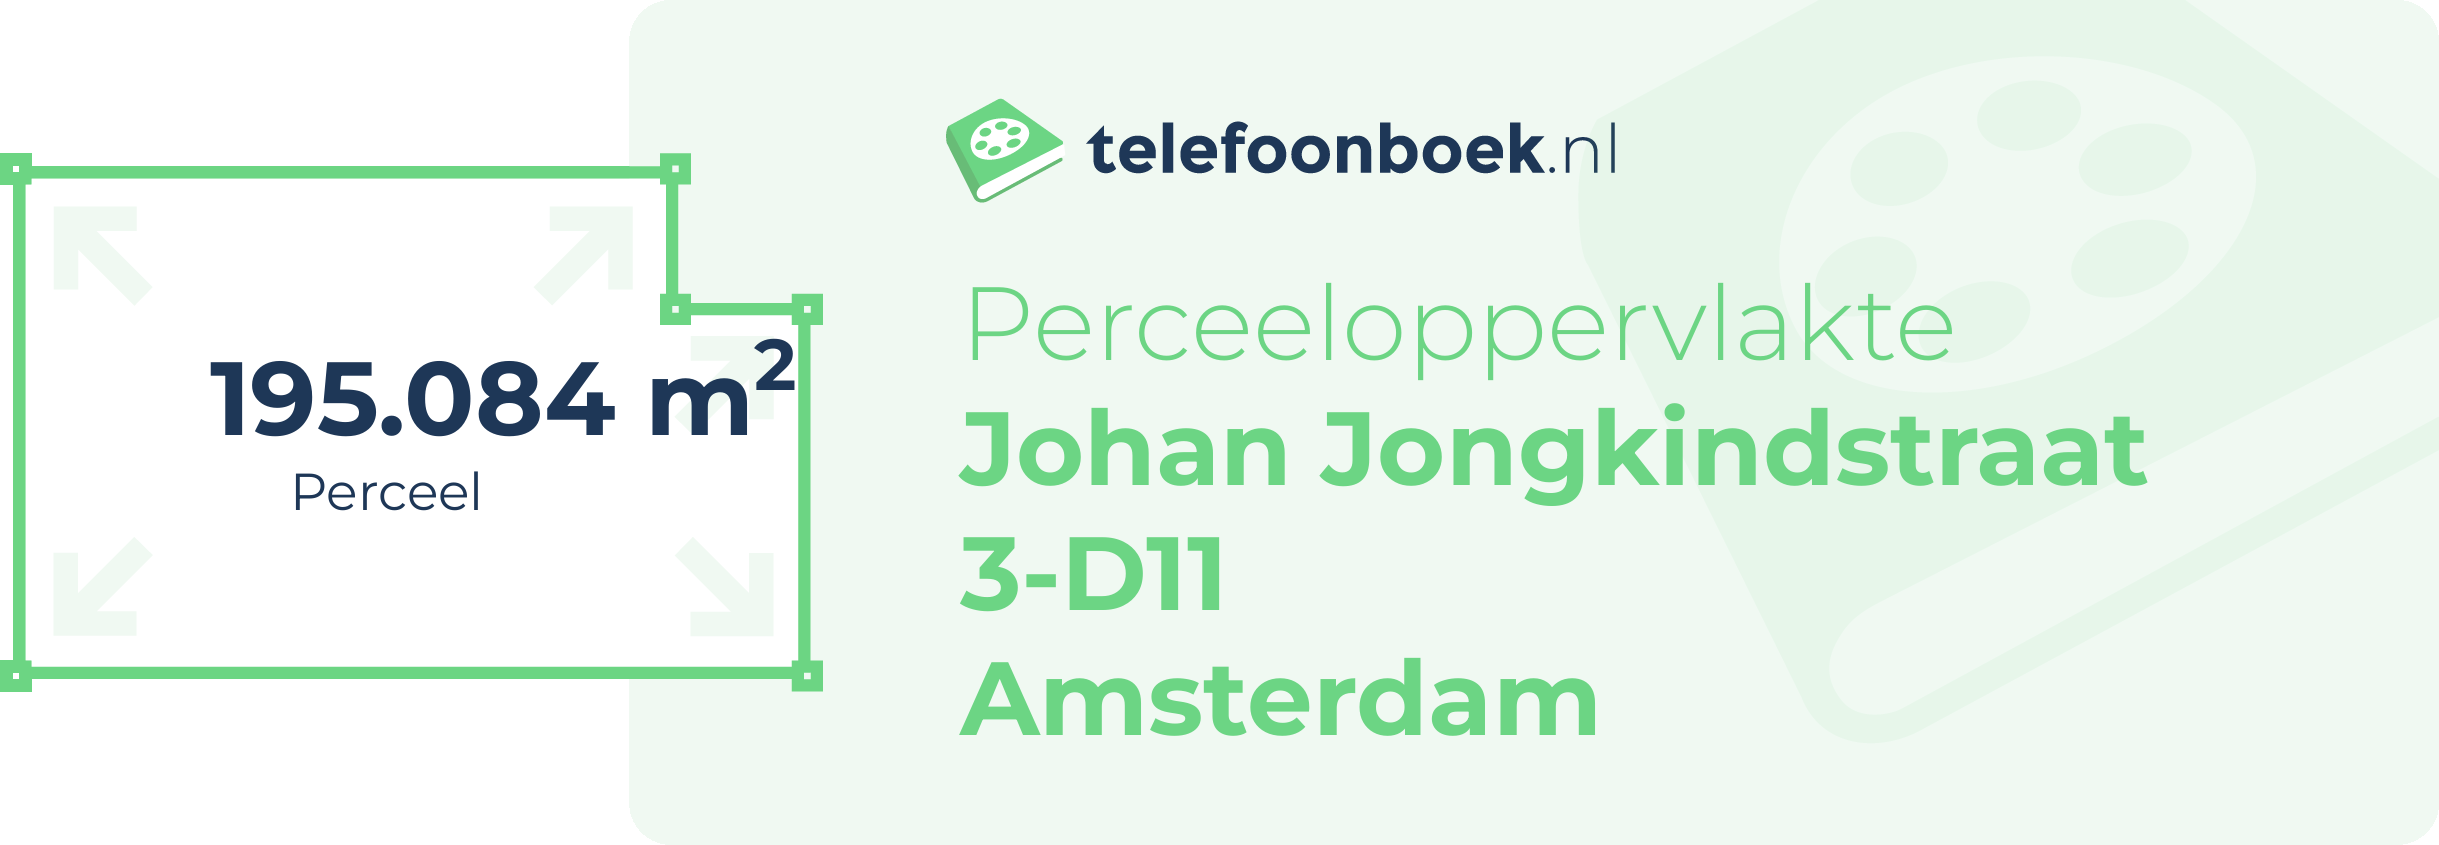 Perceeloppervlakte Johan Jongkindstraat 3-D11 Amsterdam